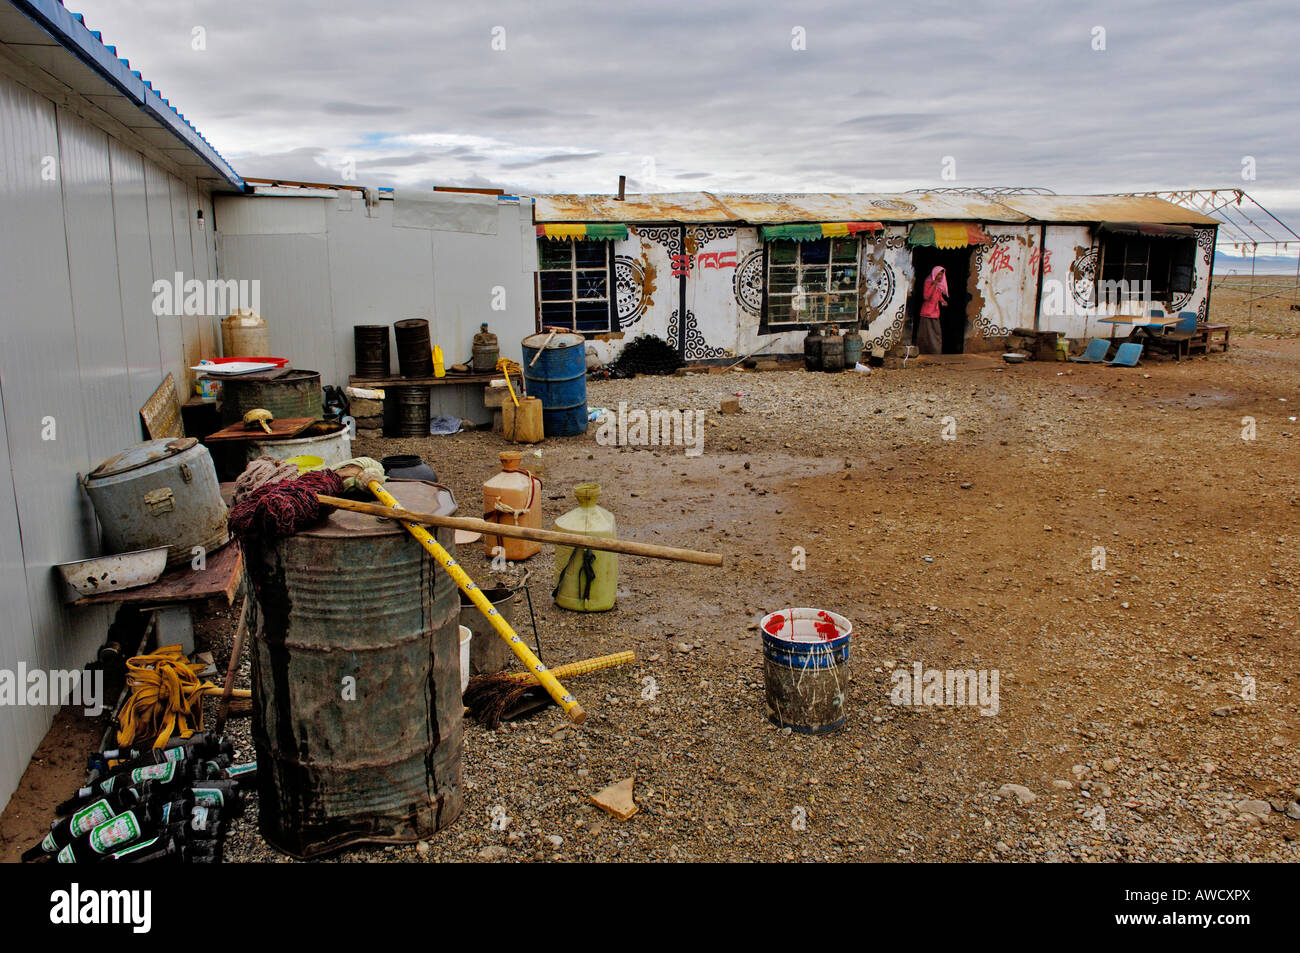 Container village, Nam Tso lake, Tibet Stock Photo